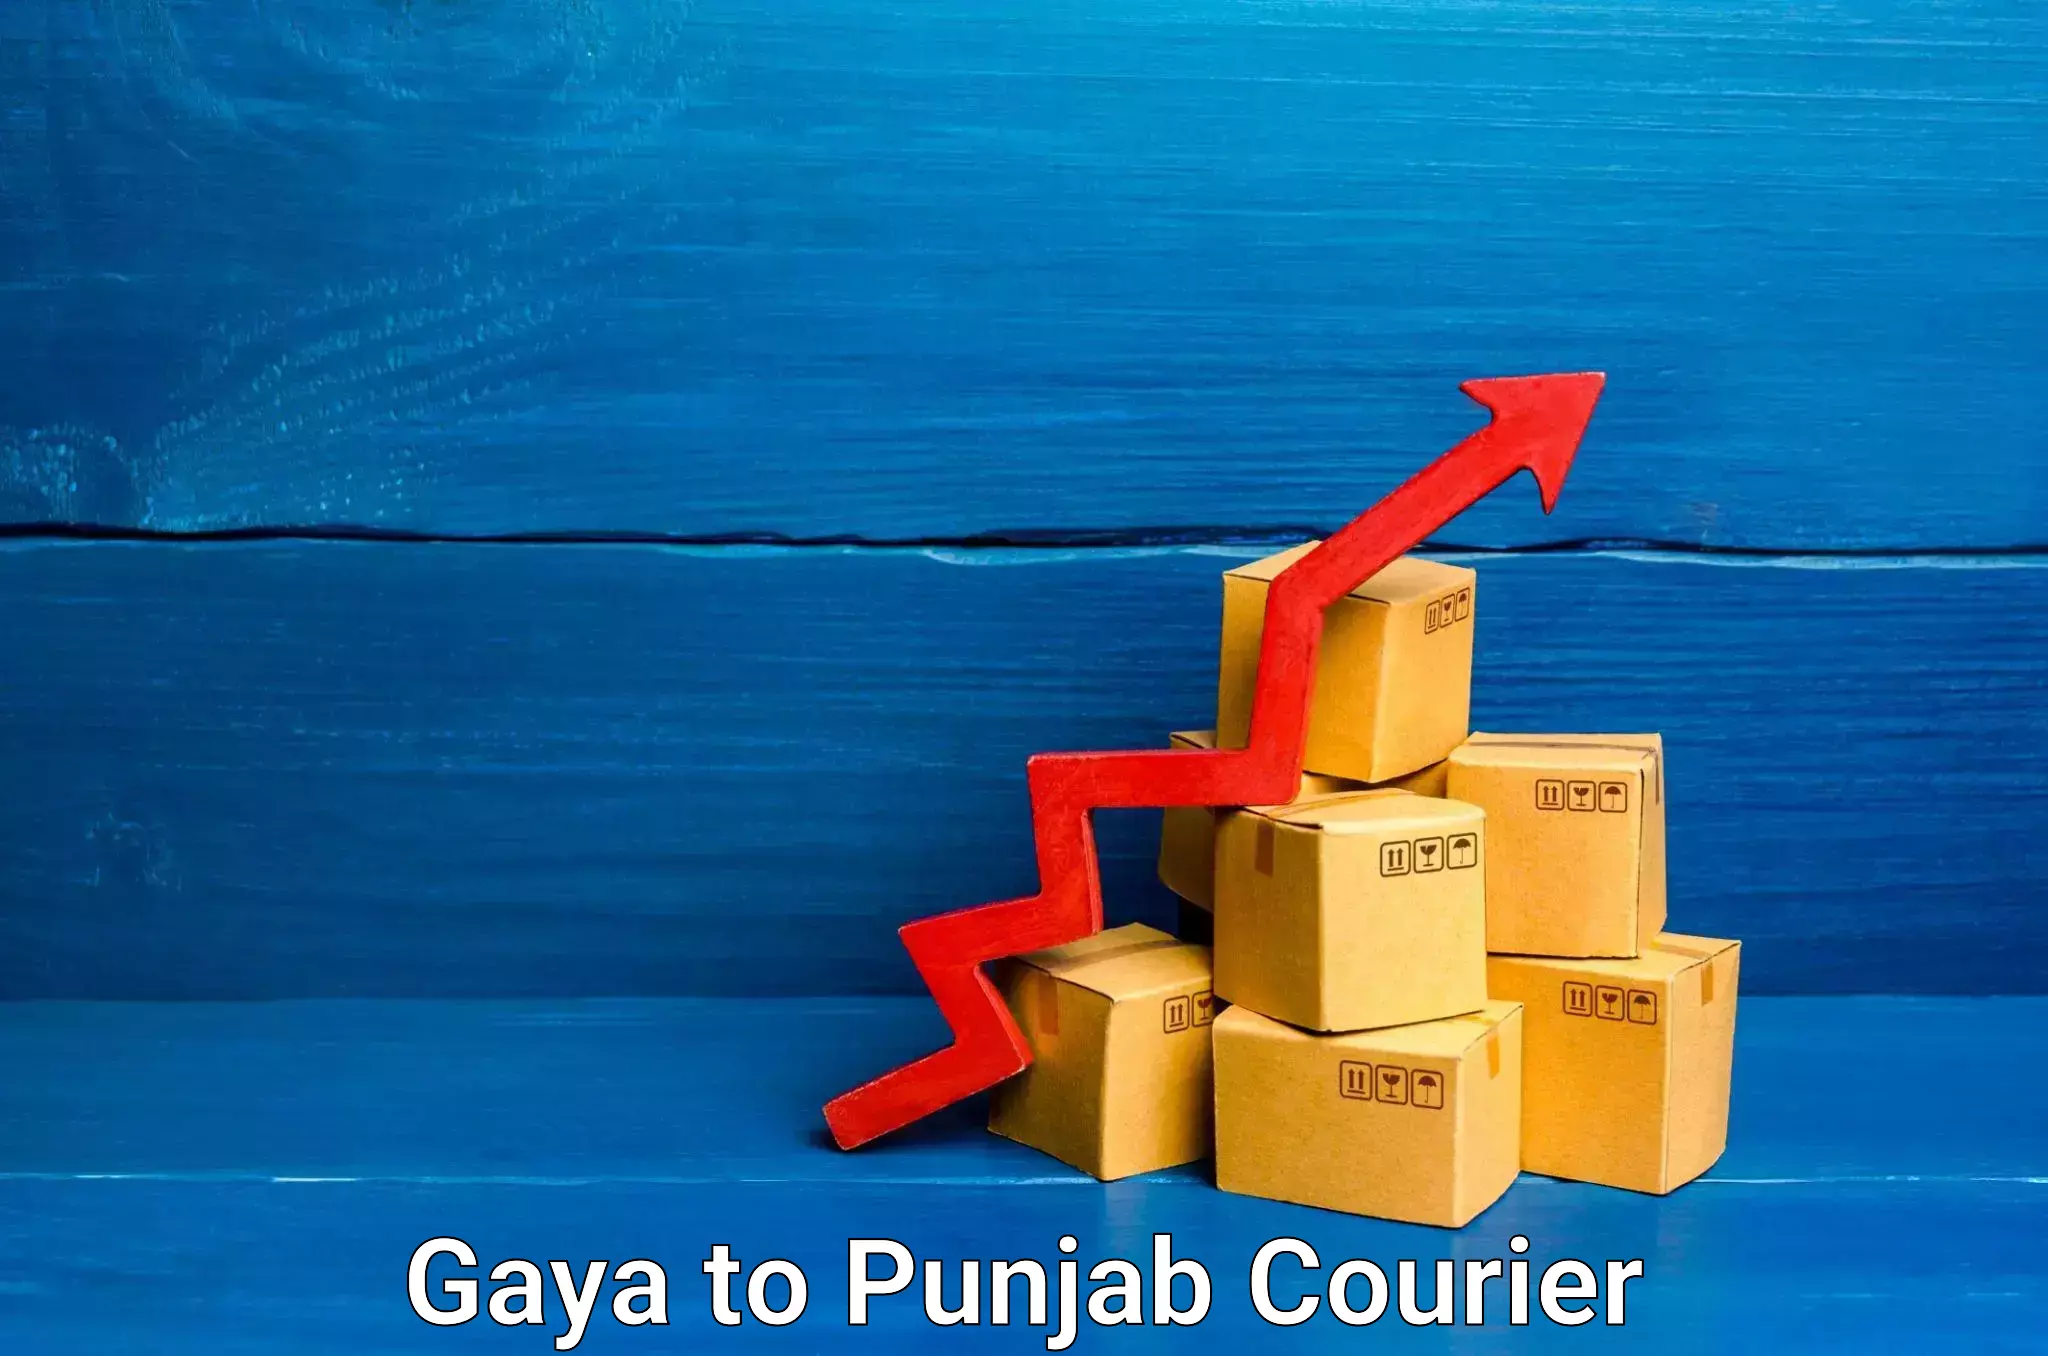 Furniture relocation experts Gaya to Punjab